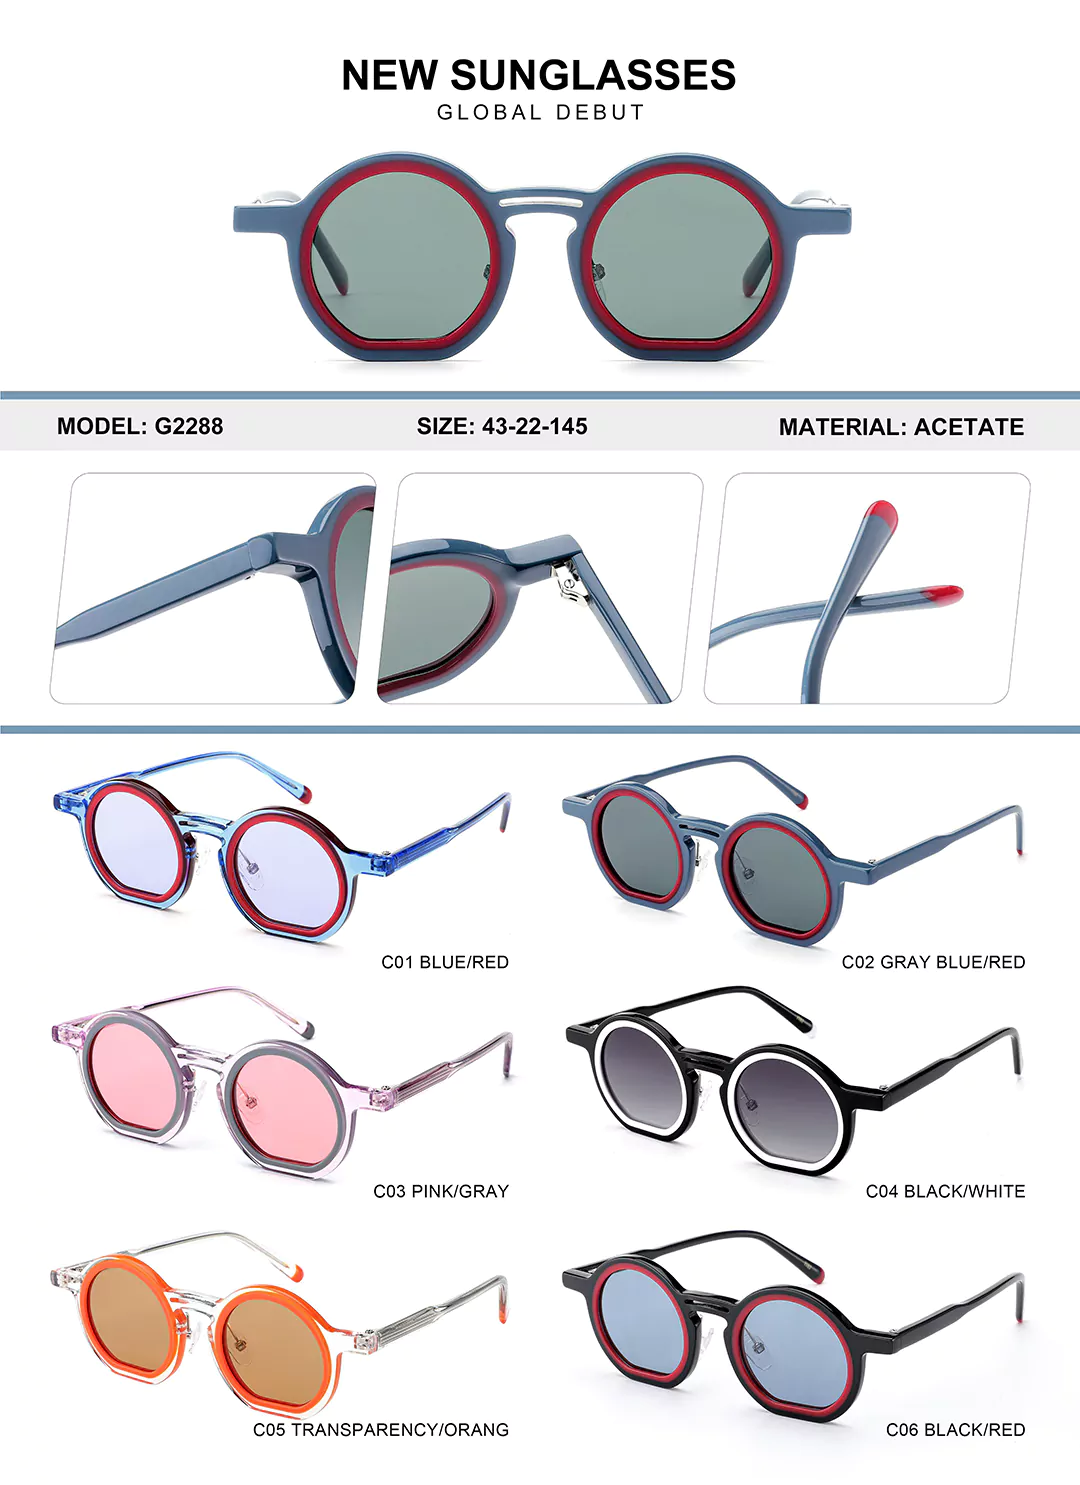 Kids Acetate Glasses G2288 Different colors shown, detail shots, size